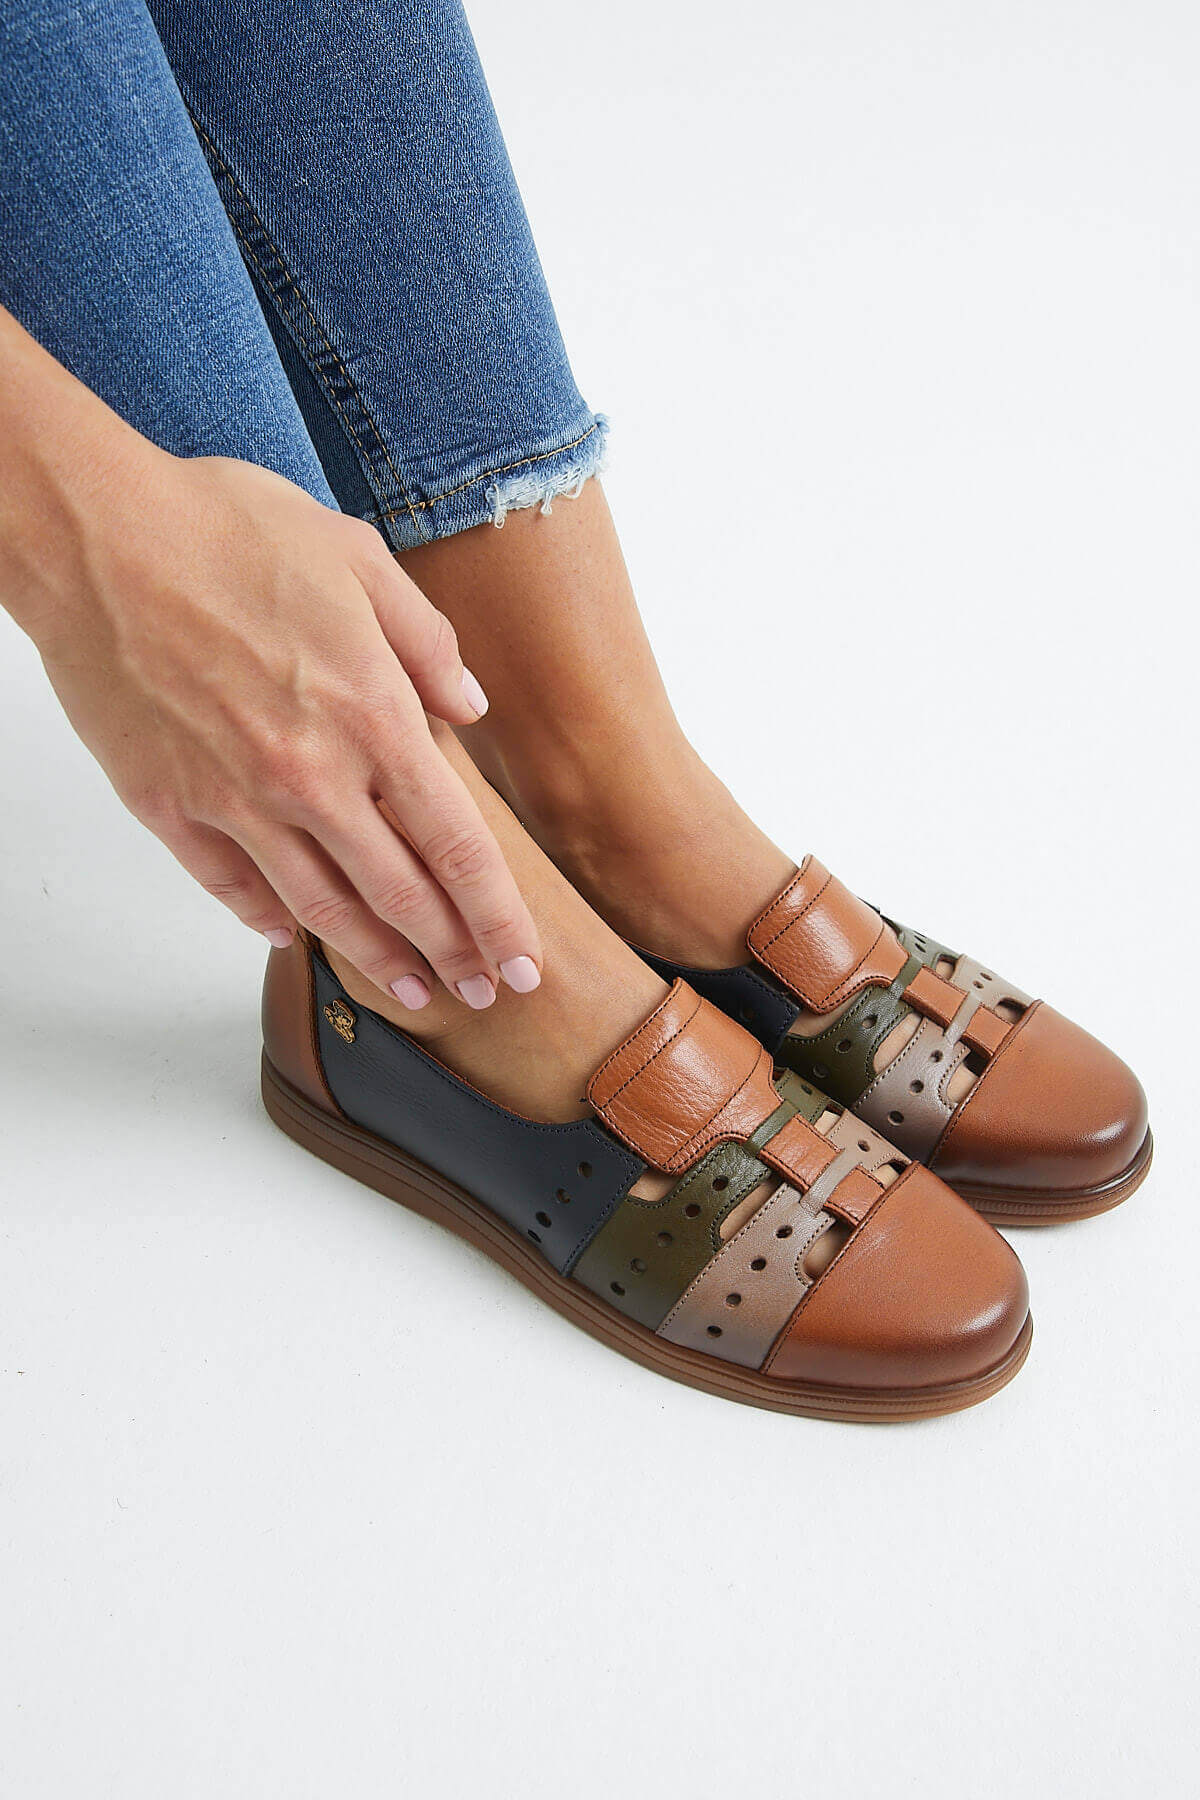 Kadın Yazlık Comfort Deri Ayakkabı Taba 1813672Y - Thumbnail